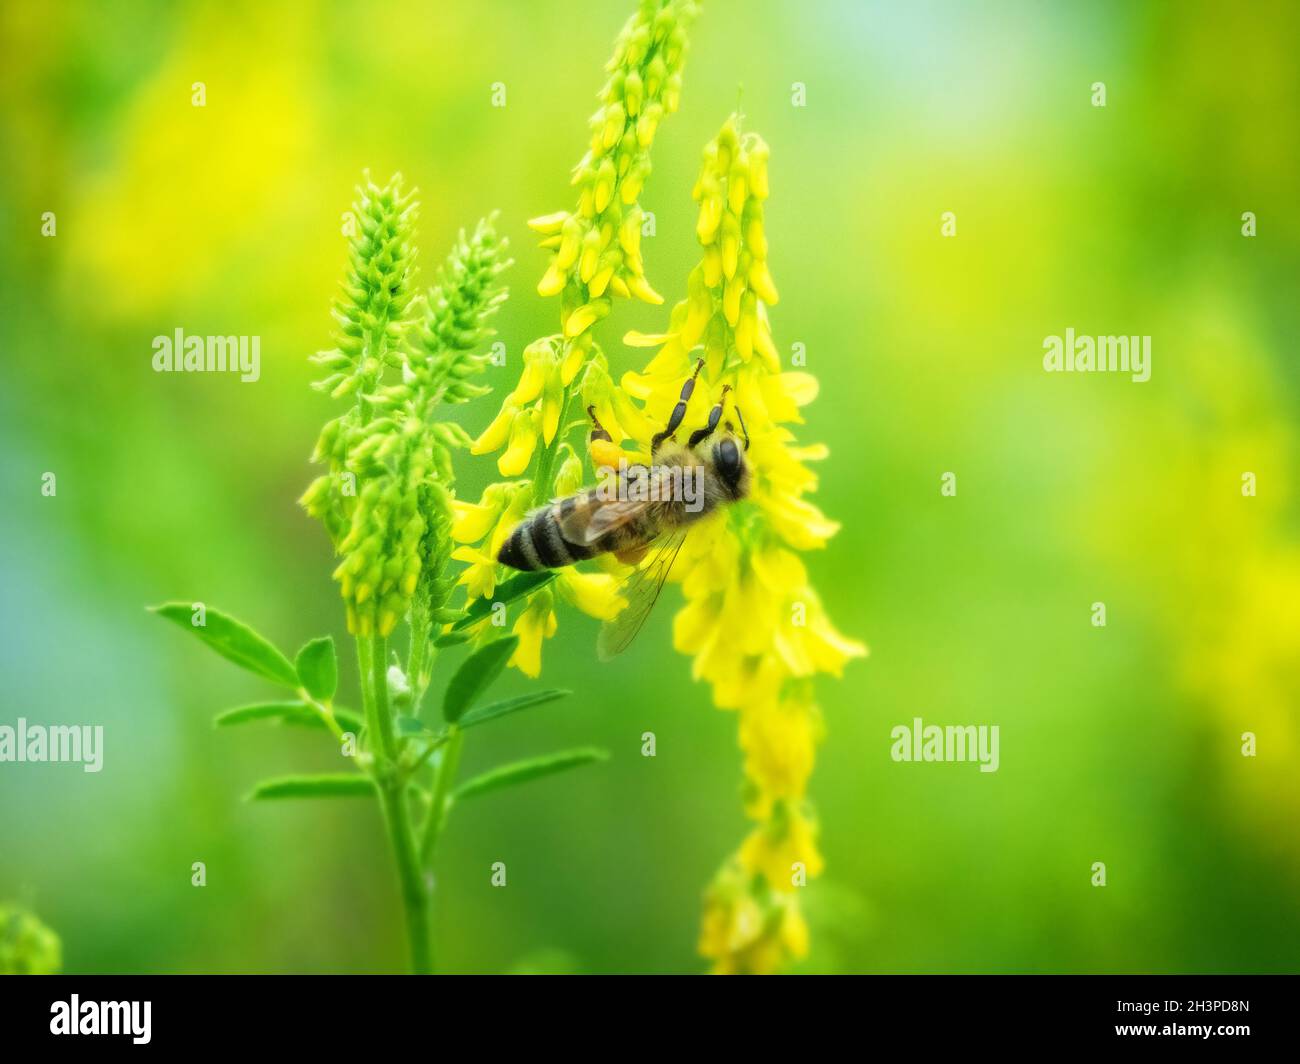 Hony bee flies around the flowers Stock Photo